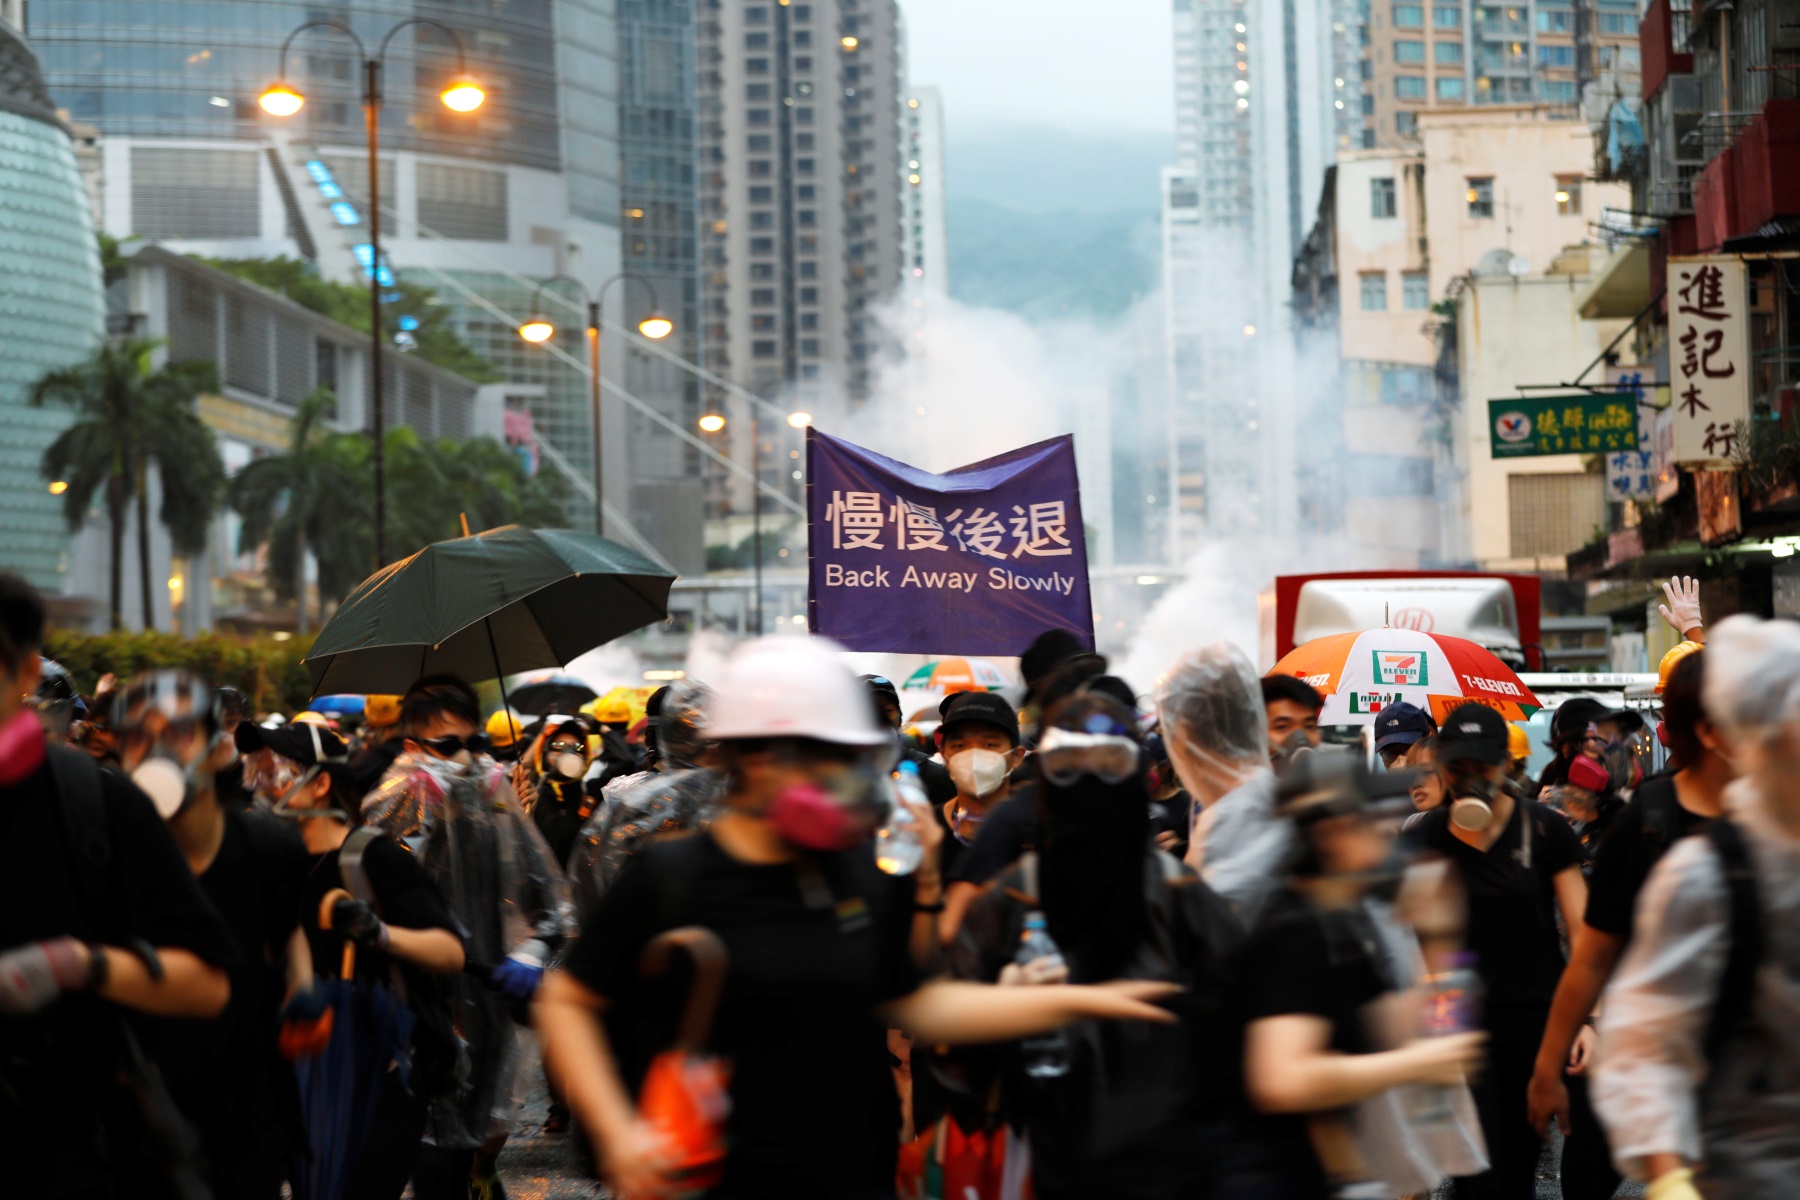 Αγριεύει η κατάσταση στο Χονγκ Κονγκ! Αντλίες νερού και χρήση όπλου από αστυνομικό